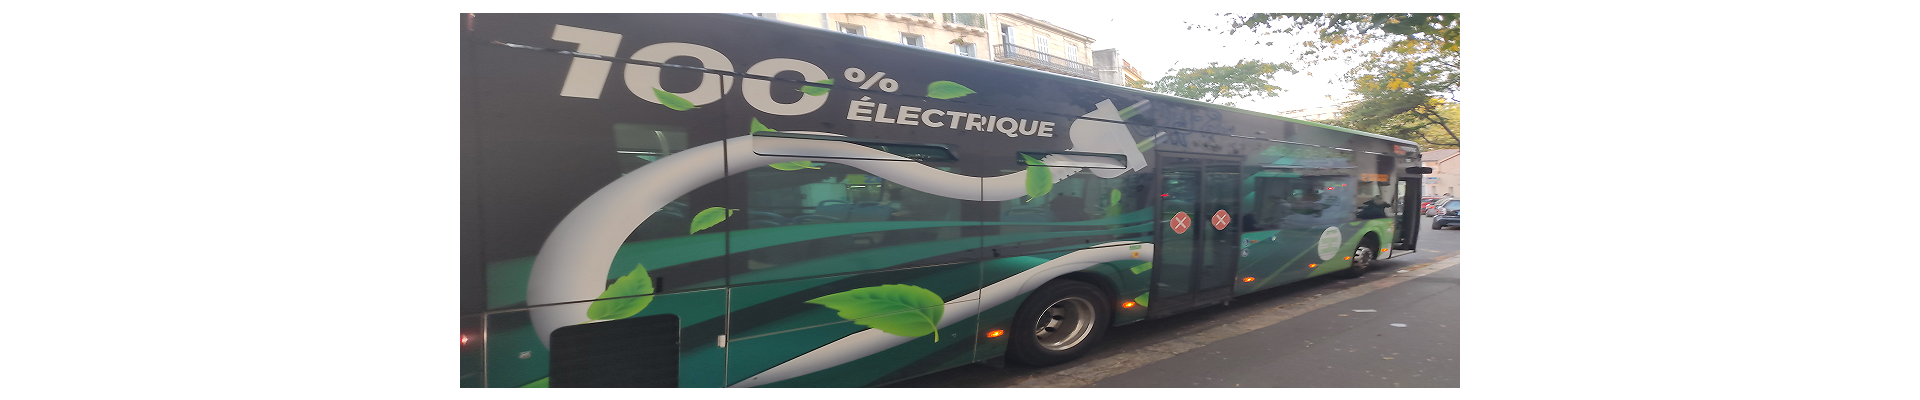 Projet de refonte du réseau de bus à Marseille 2025 : votre avis compte !